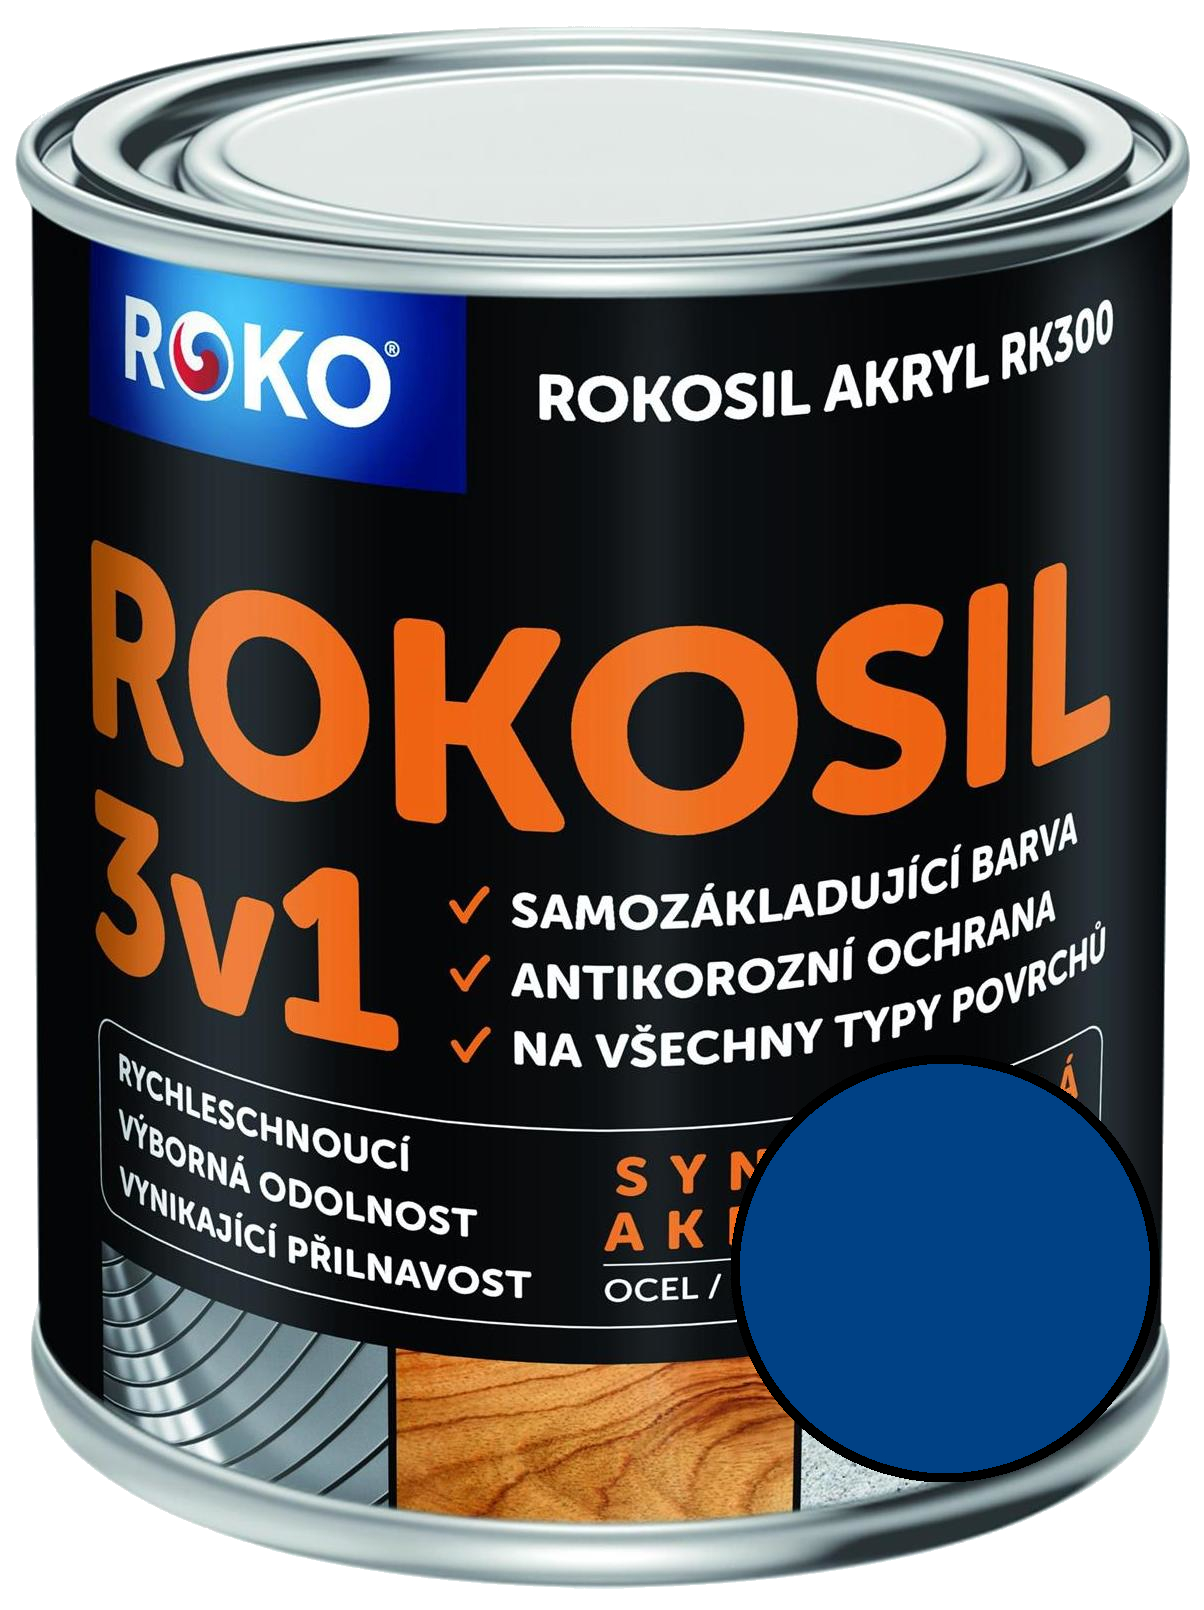 Barva samozákladující Rokosil akryl 3v1 RK 300 4550 modrá střední